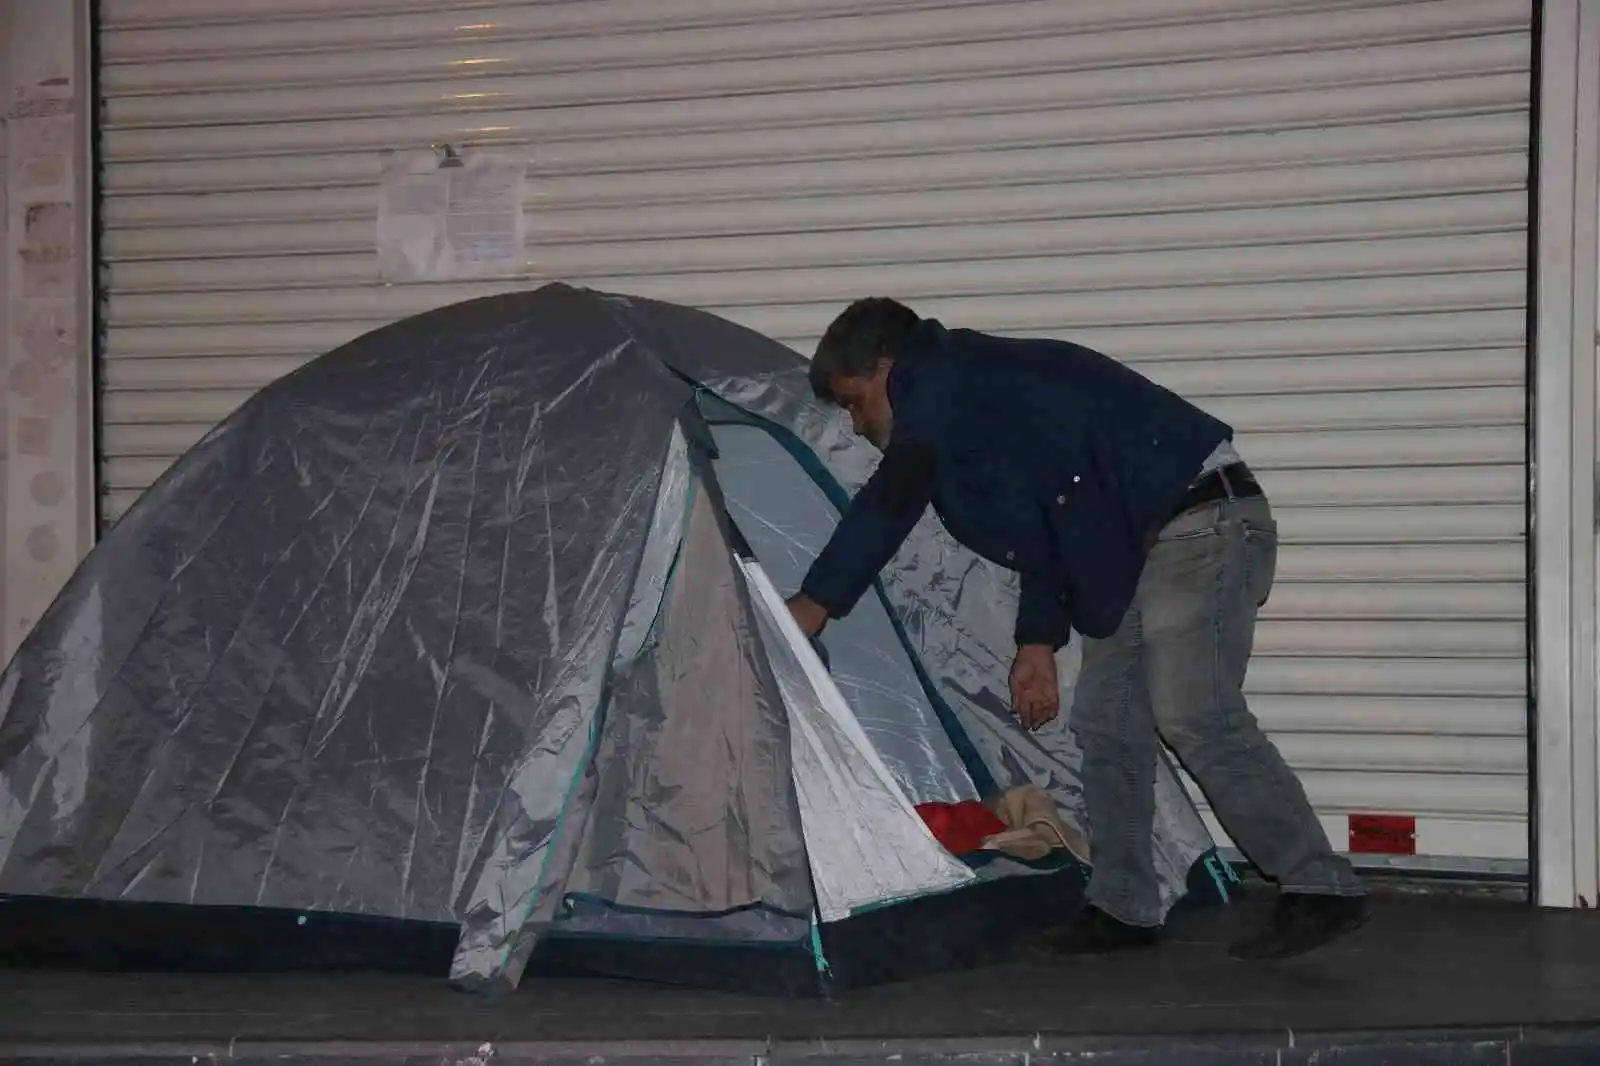 Çaresiz baba evladının götürüldüğü kapıda gece çadır kurarak bekliyor
